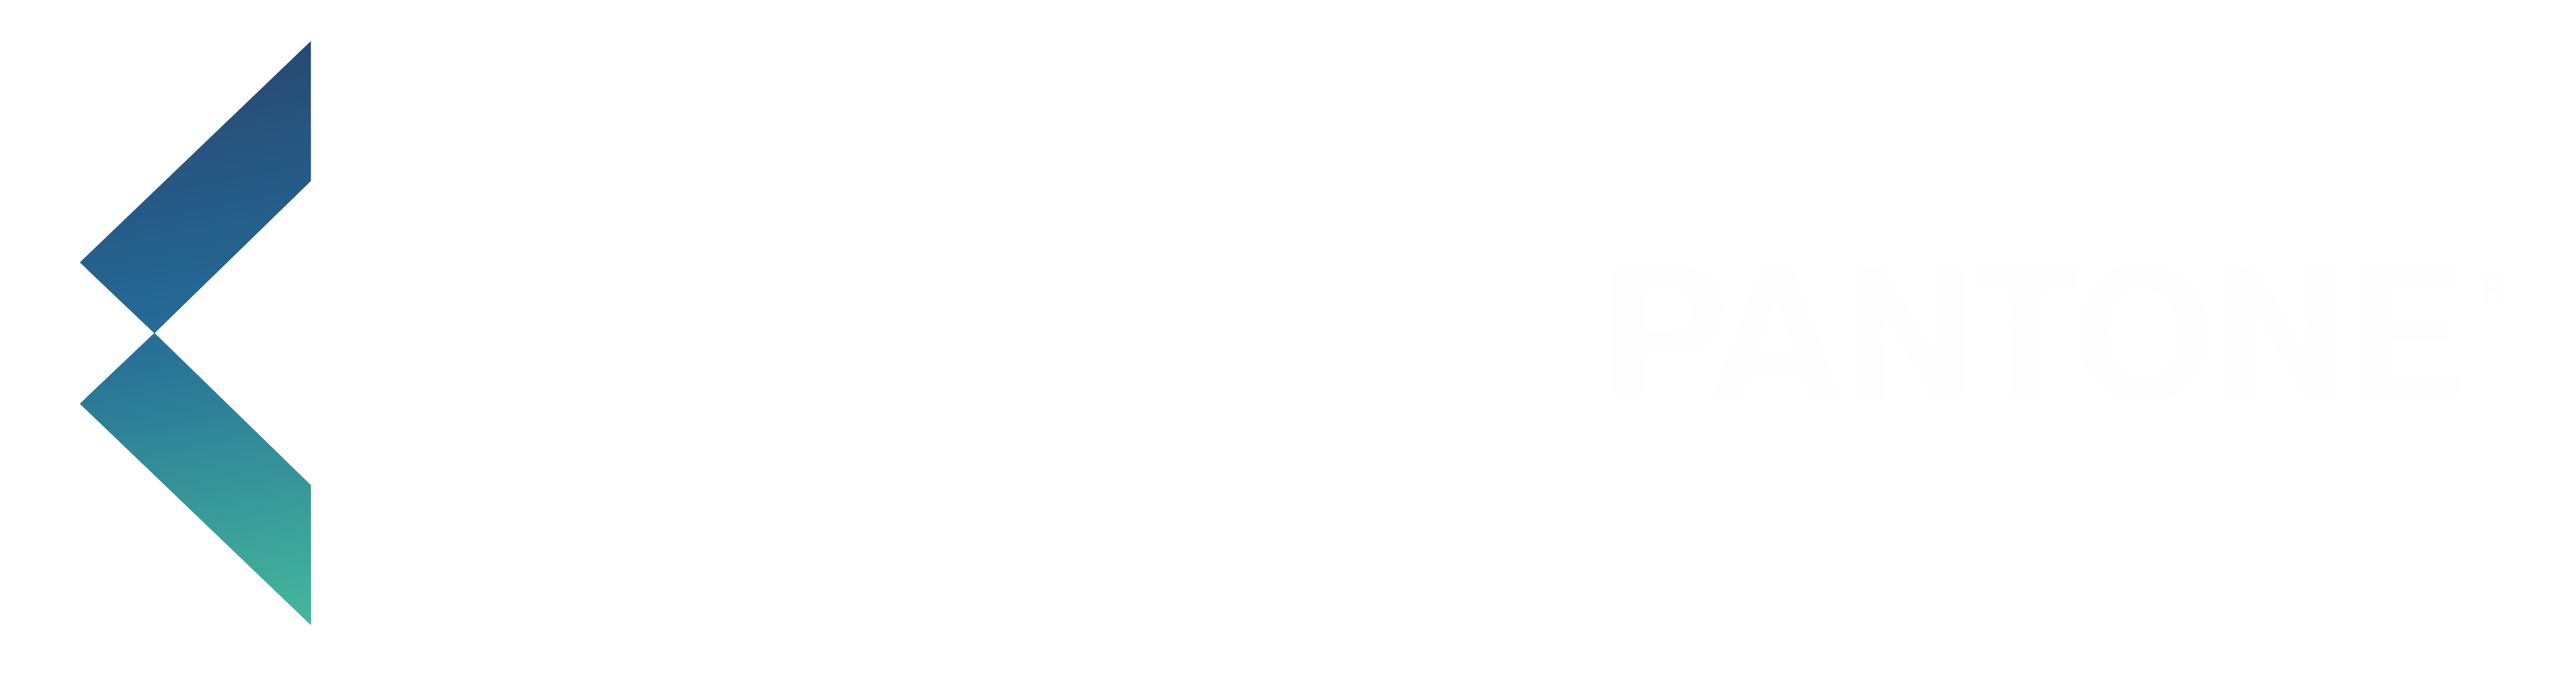 logo vvc bleu transparent sans slogan_